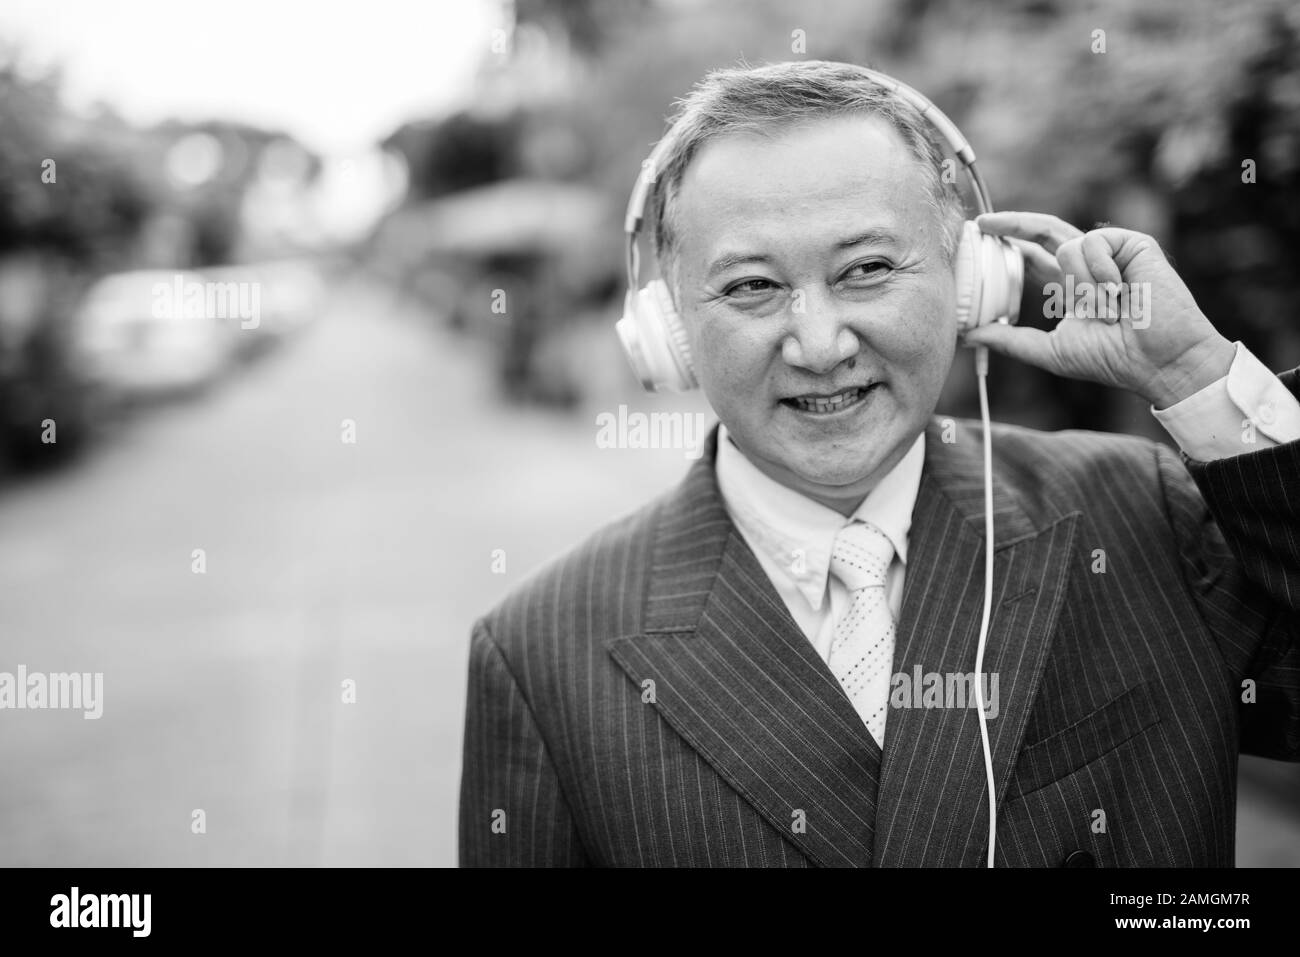 Porträt eines reifen asiatischen Geschäftsmannes, der Anzug trägt, während er im Freien Musik auf den Straßen hört Stockfoto